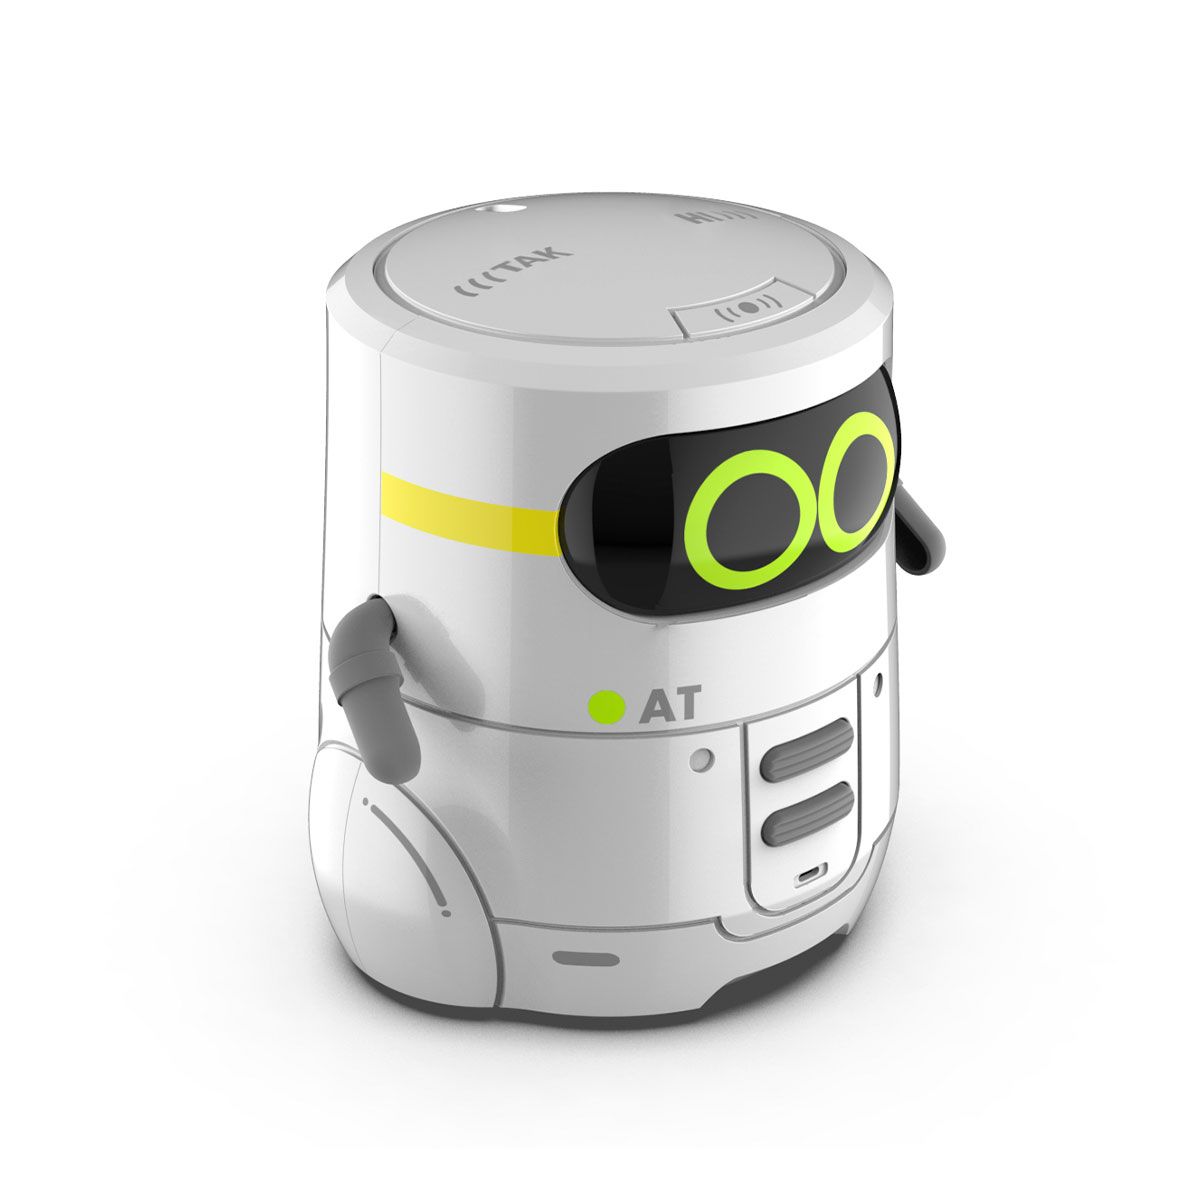 Розумний робот (з сенсорним керуванням та навчальними картками), укр